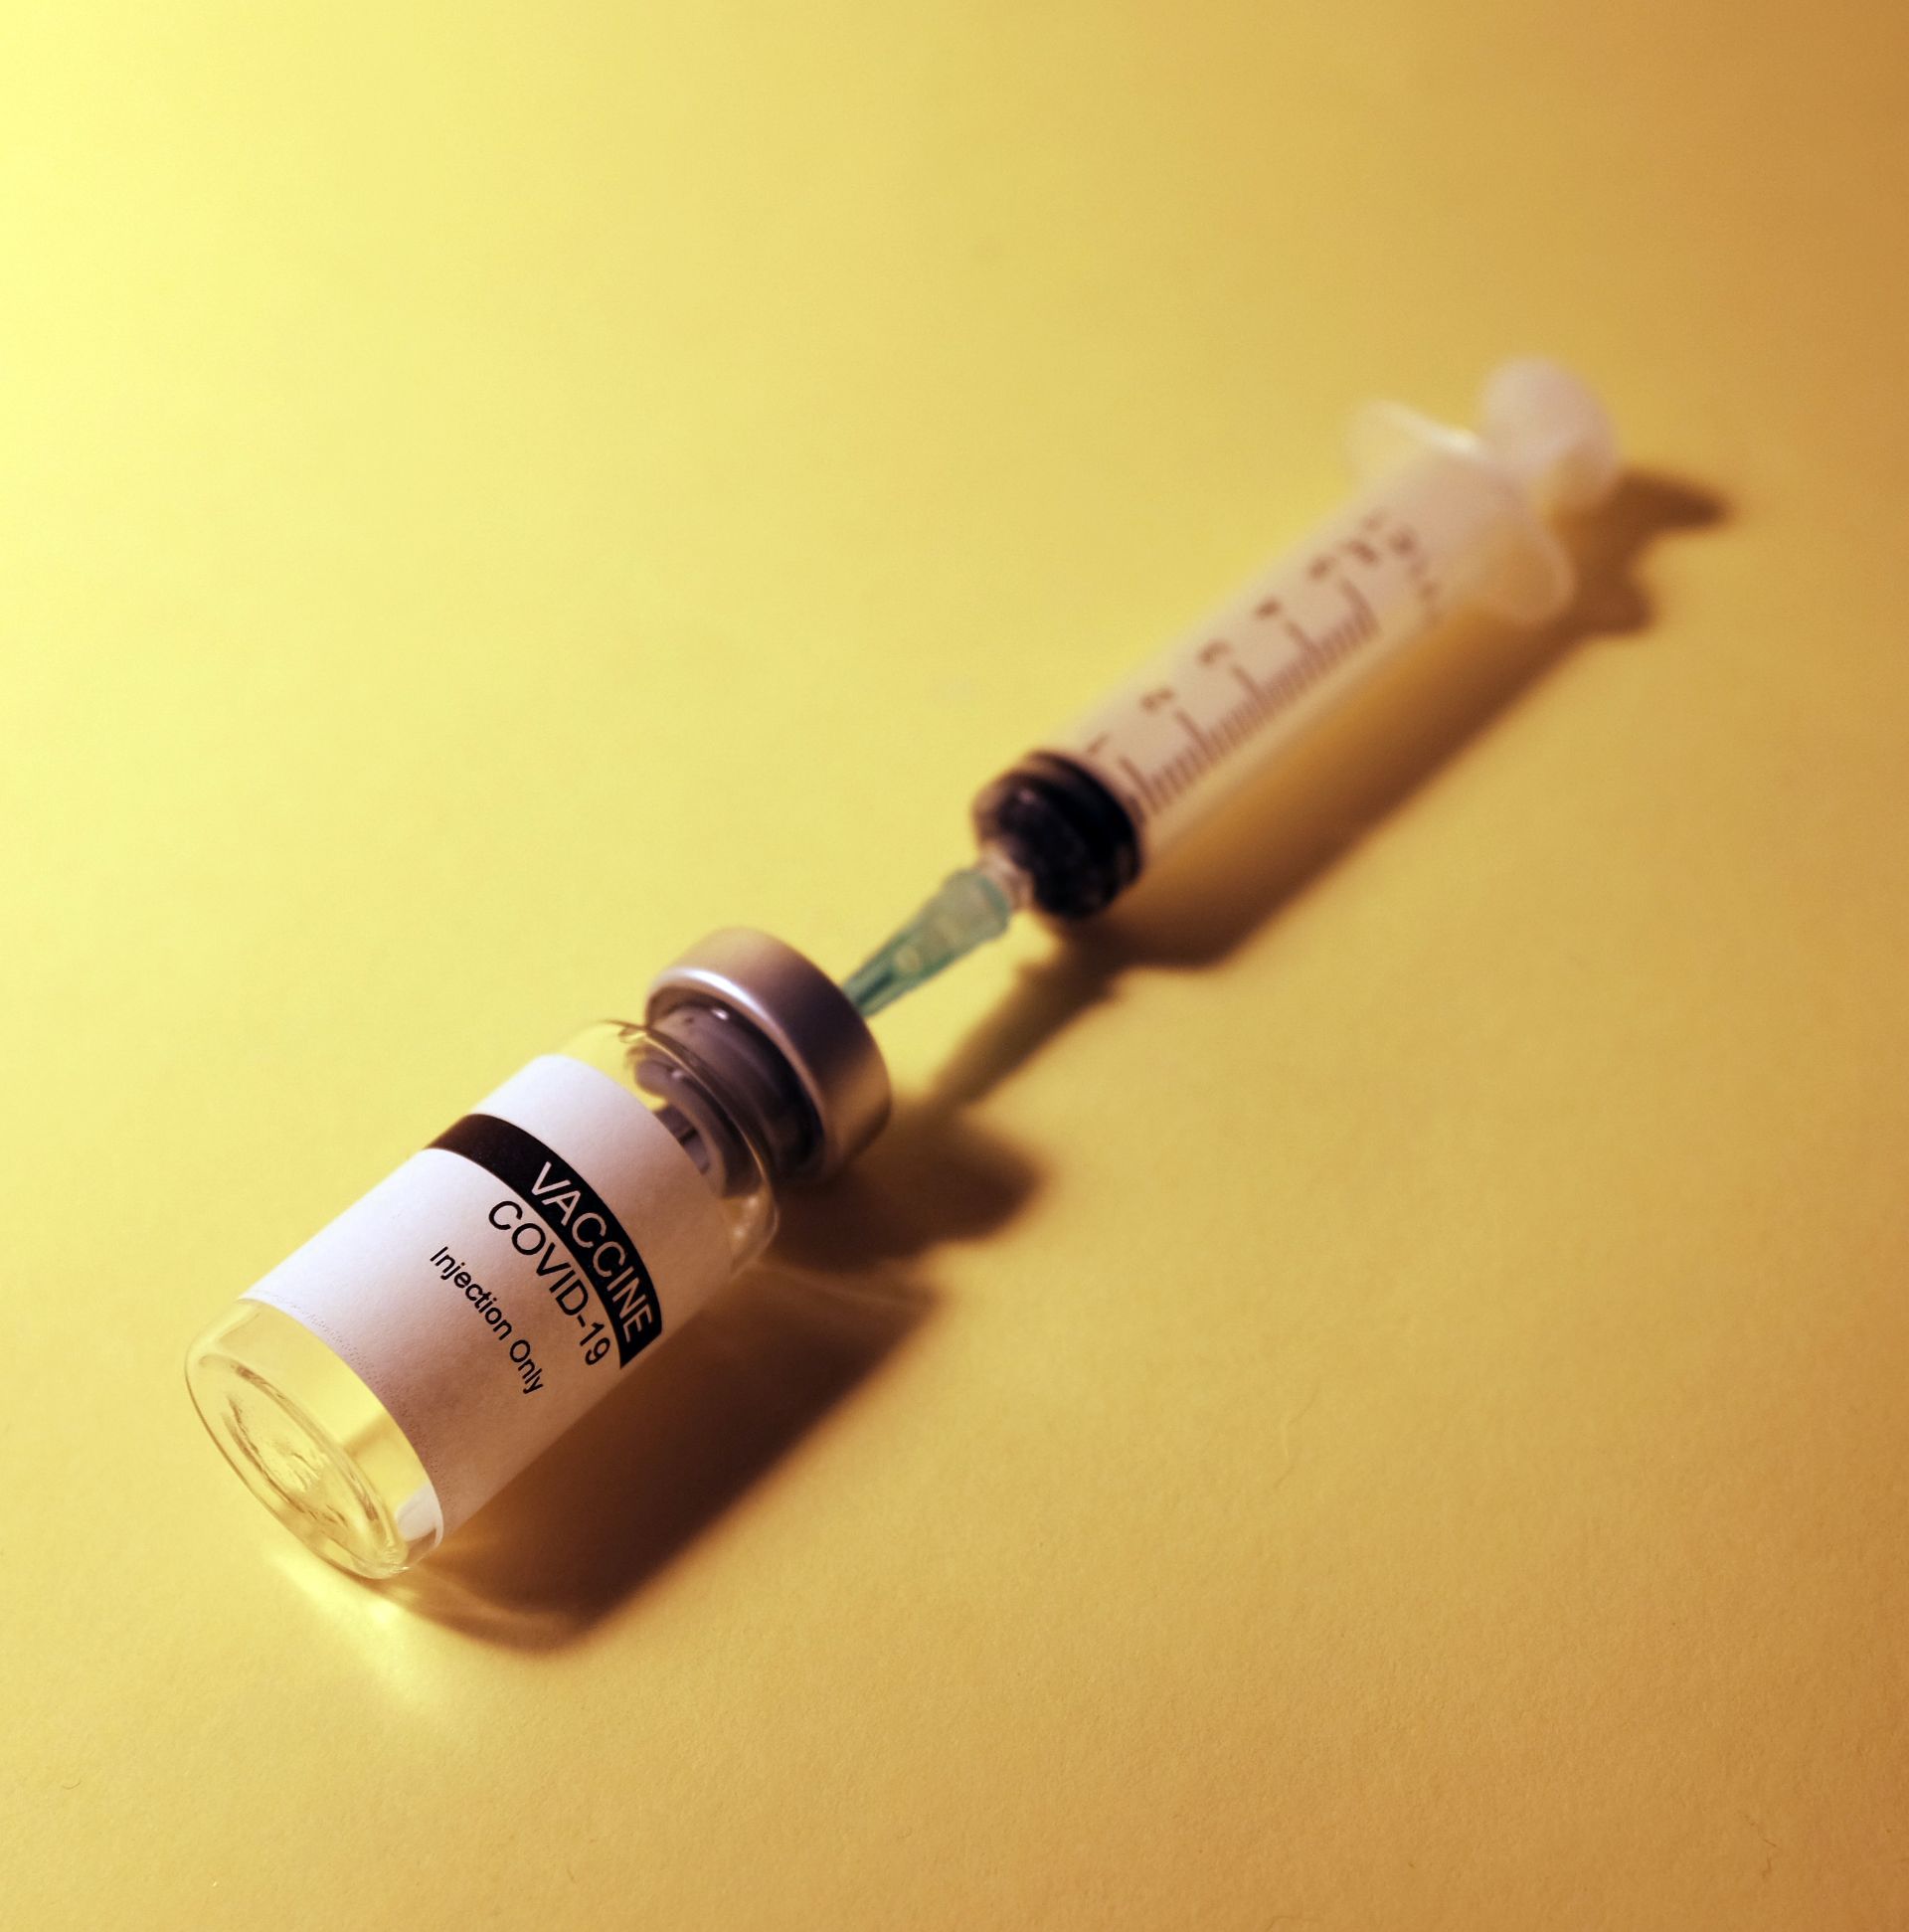 Germania renunţă la vaccinarea obligatorie anti-COVID